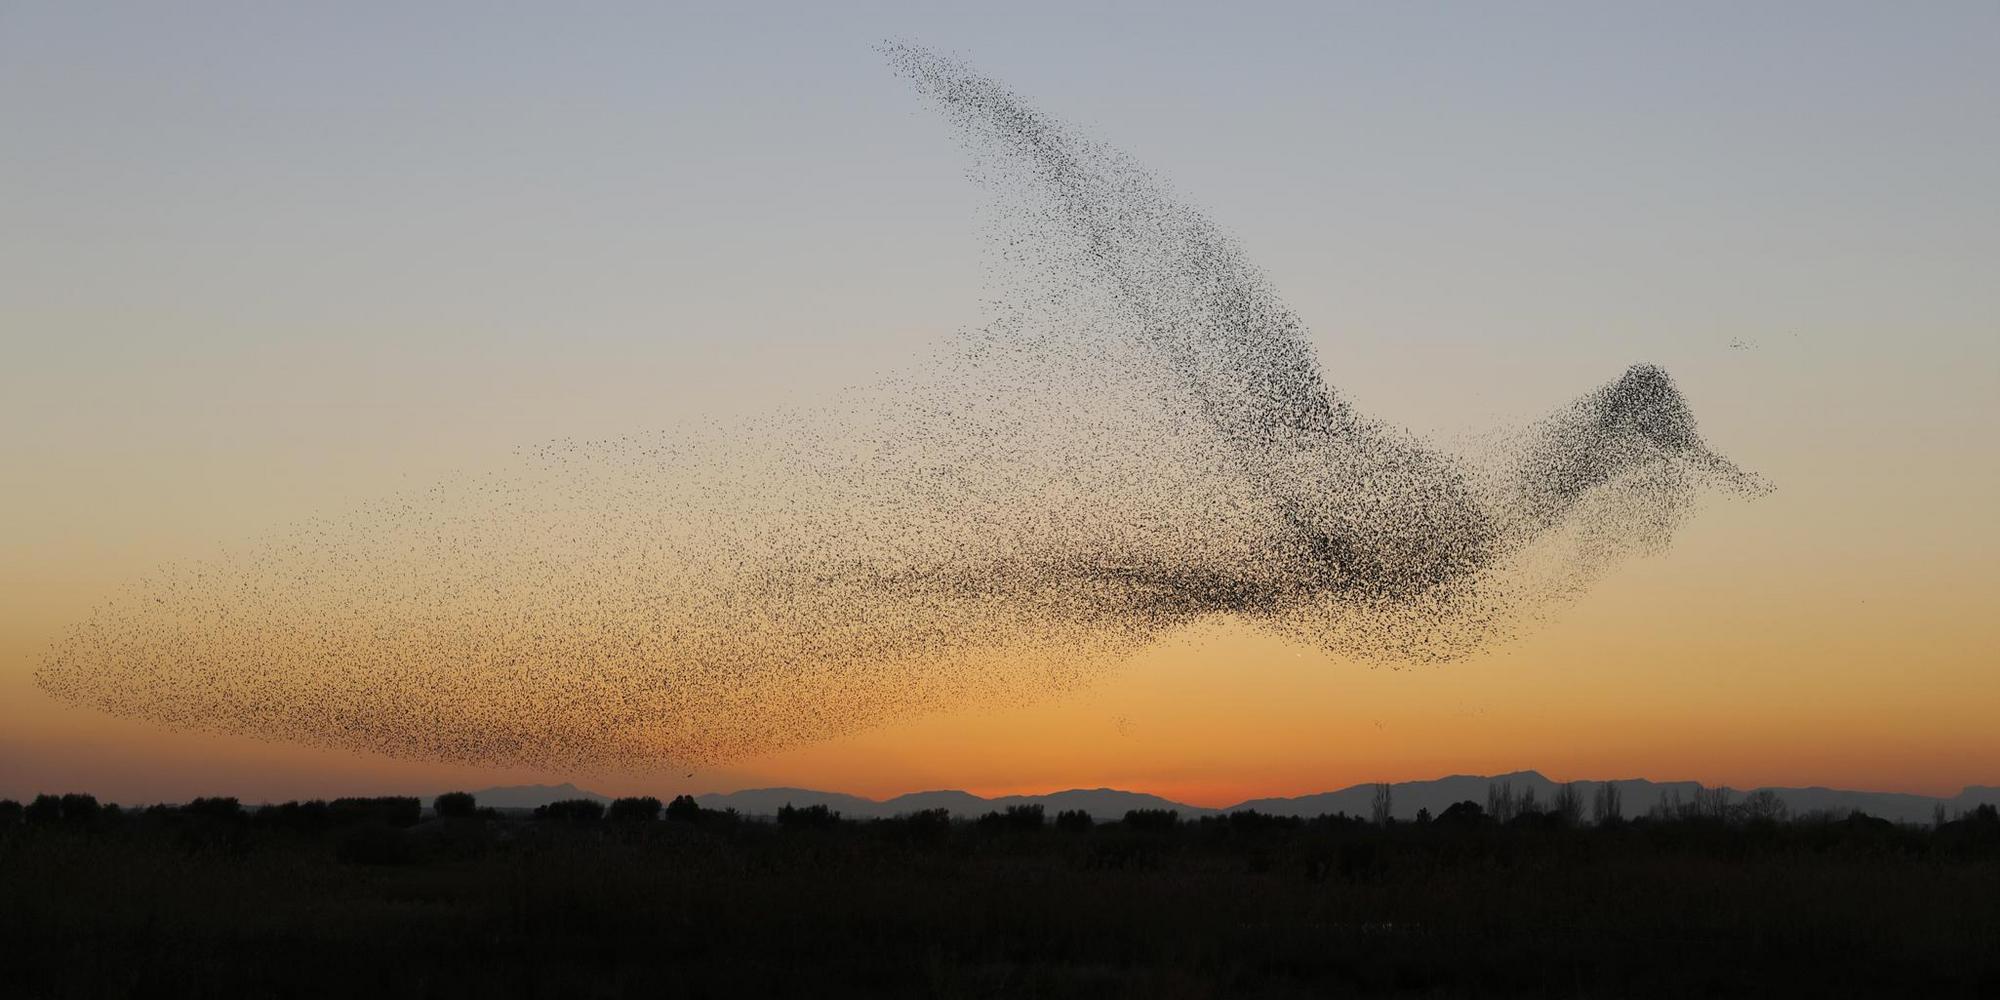 Ein Starenschwarm fliegt bei Sonnenuntergang. Die vielen einzelnen Vögel bilden eine Wolke in der Form eines Vogels.